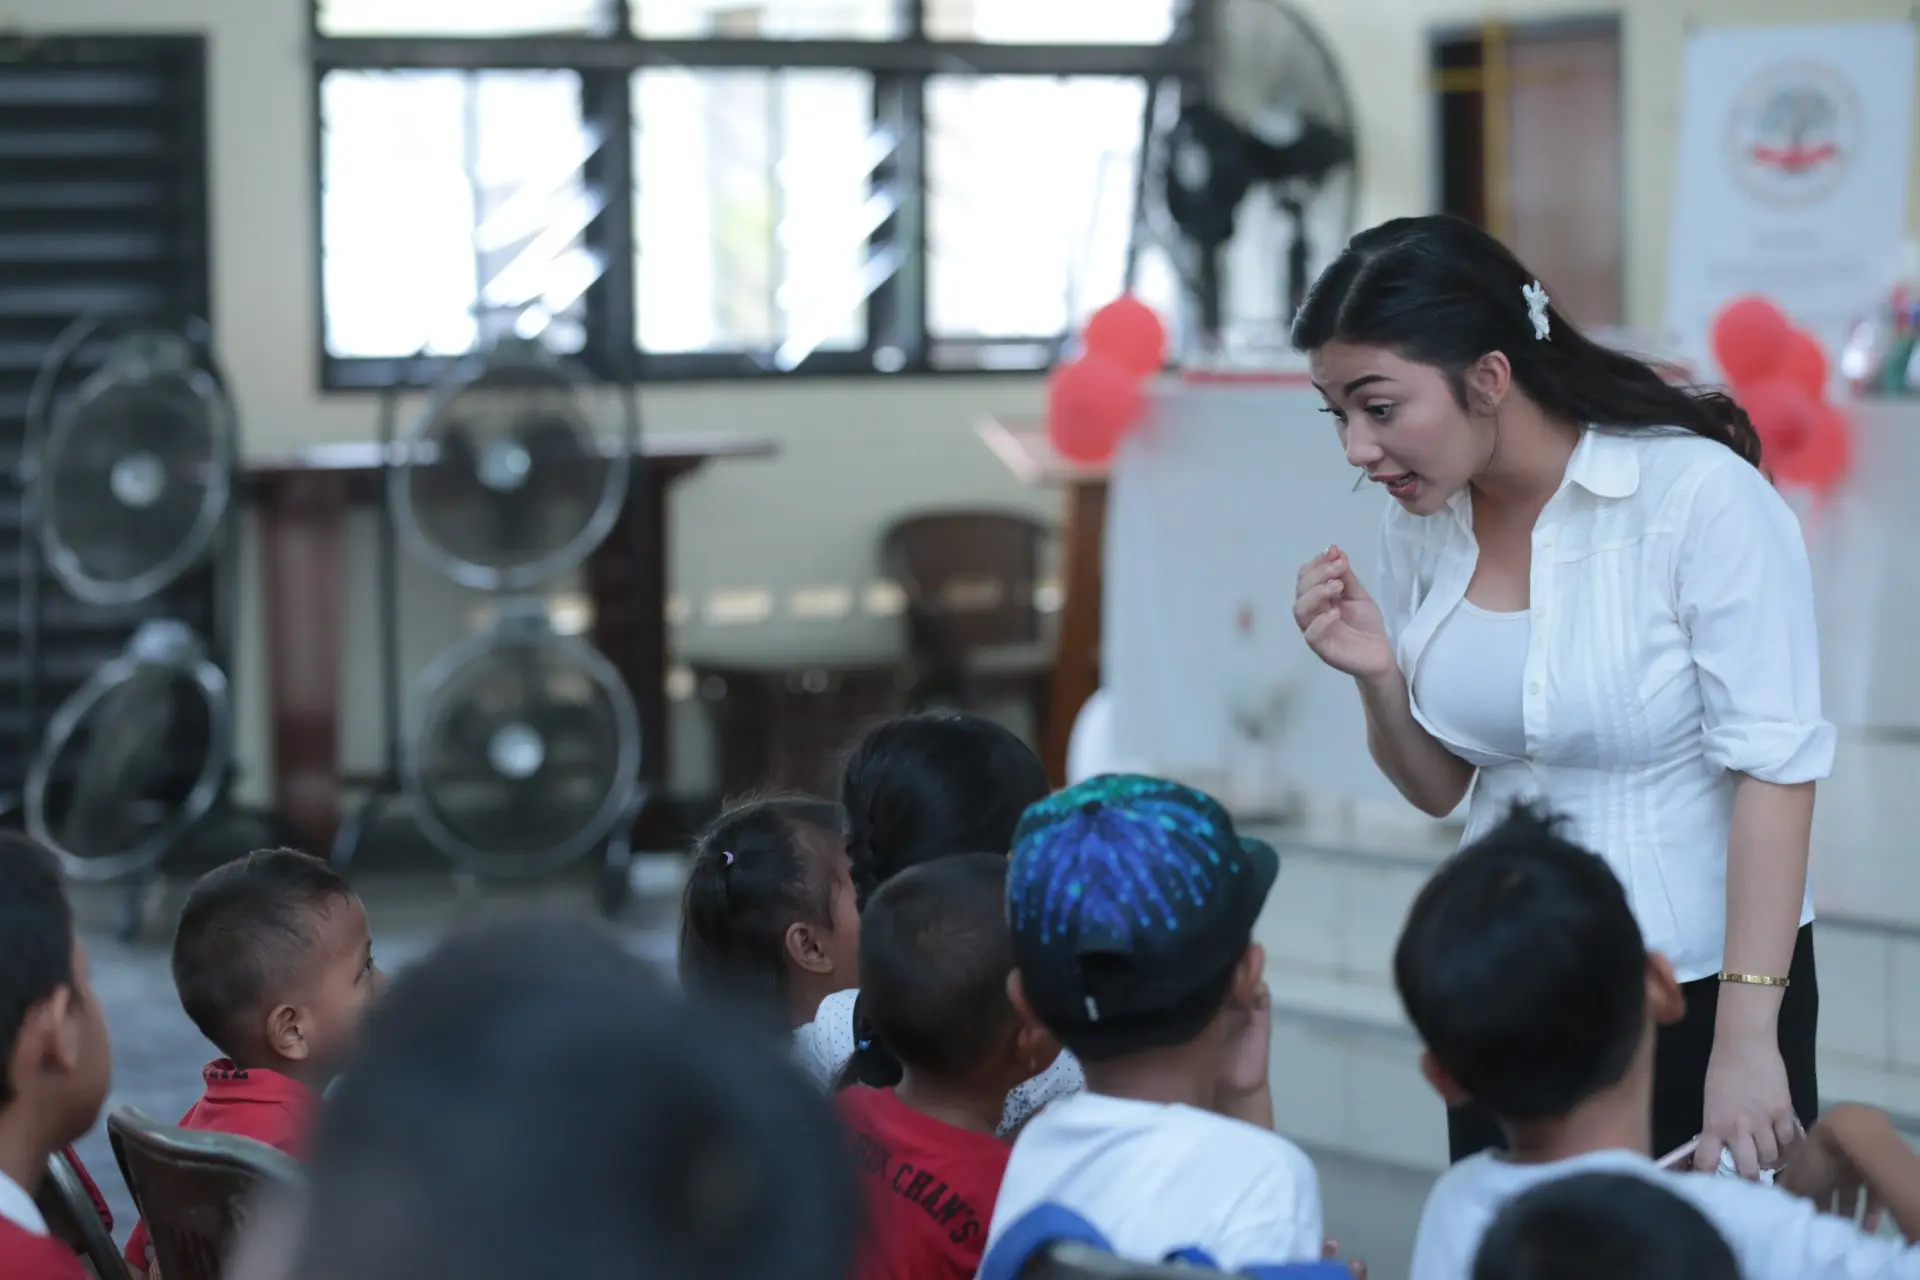 Ariel Tatum merayakan ulang tahun bersama anak-anak kurang mampu dari Yayasan Anak Negeri. Selasa (8/11/2016) acara di gelar di Aula Gereja Paroki Kawasan Rawamangun, Jakarta Timur. (Adrian Putra/Bintang.com)